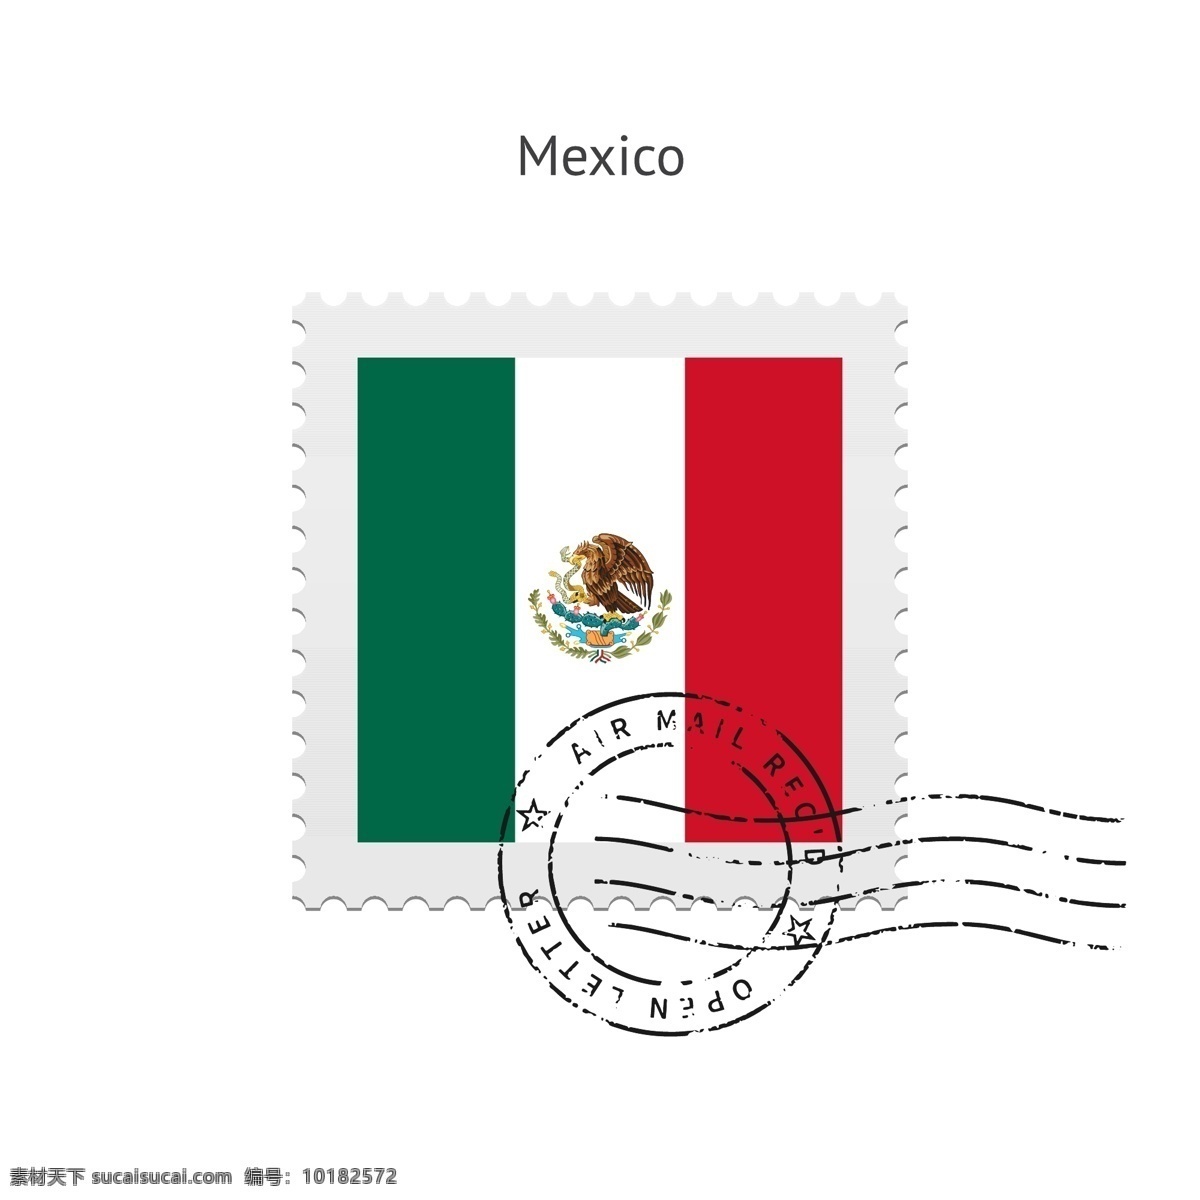 墨西哥邮票 邮票 印章 墨西哥 墨西哥国旗 矢量图案 边框底纹 背景图案 生活百科 矢量素材 白色